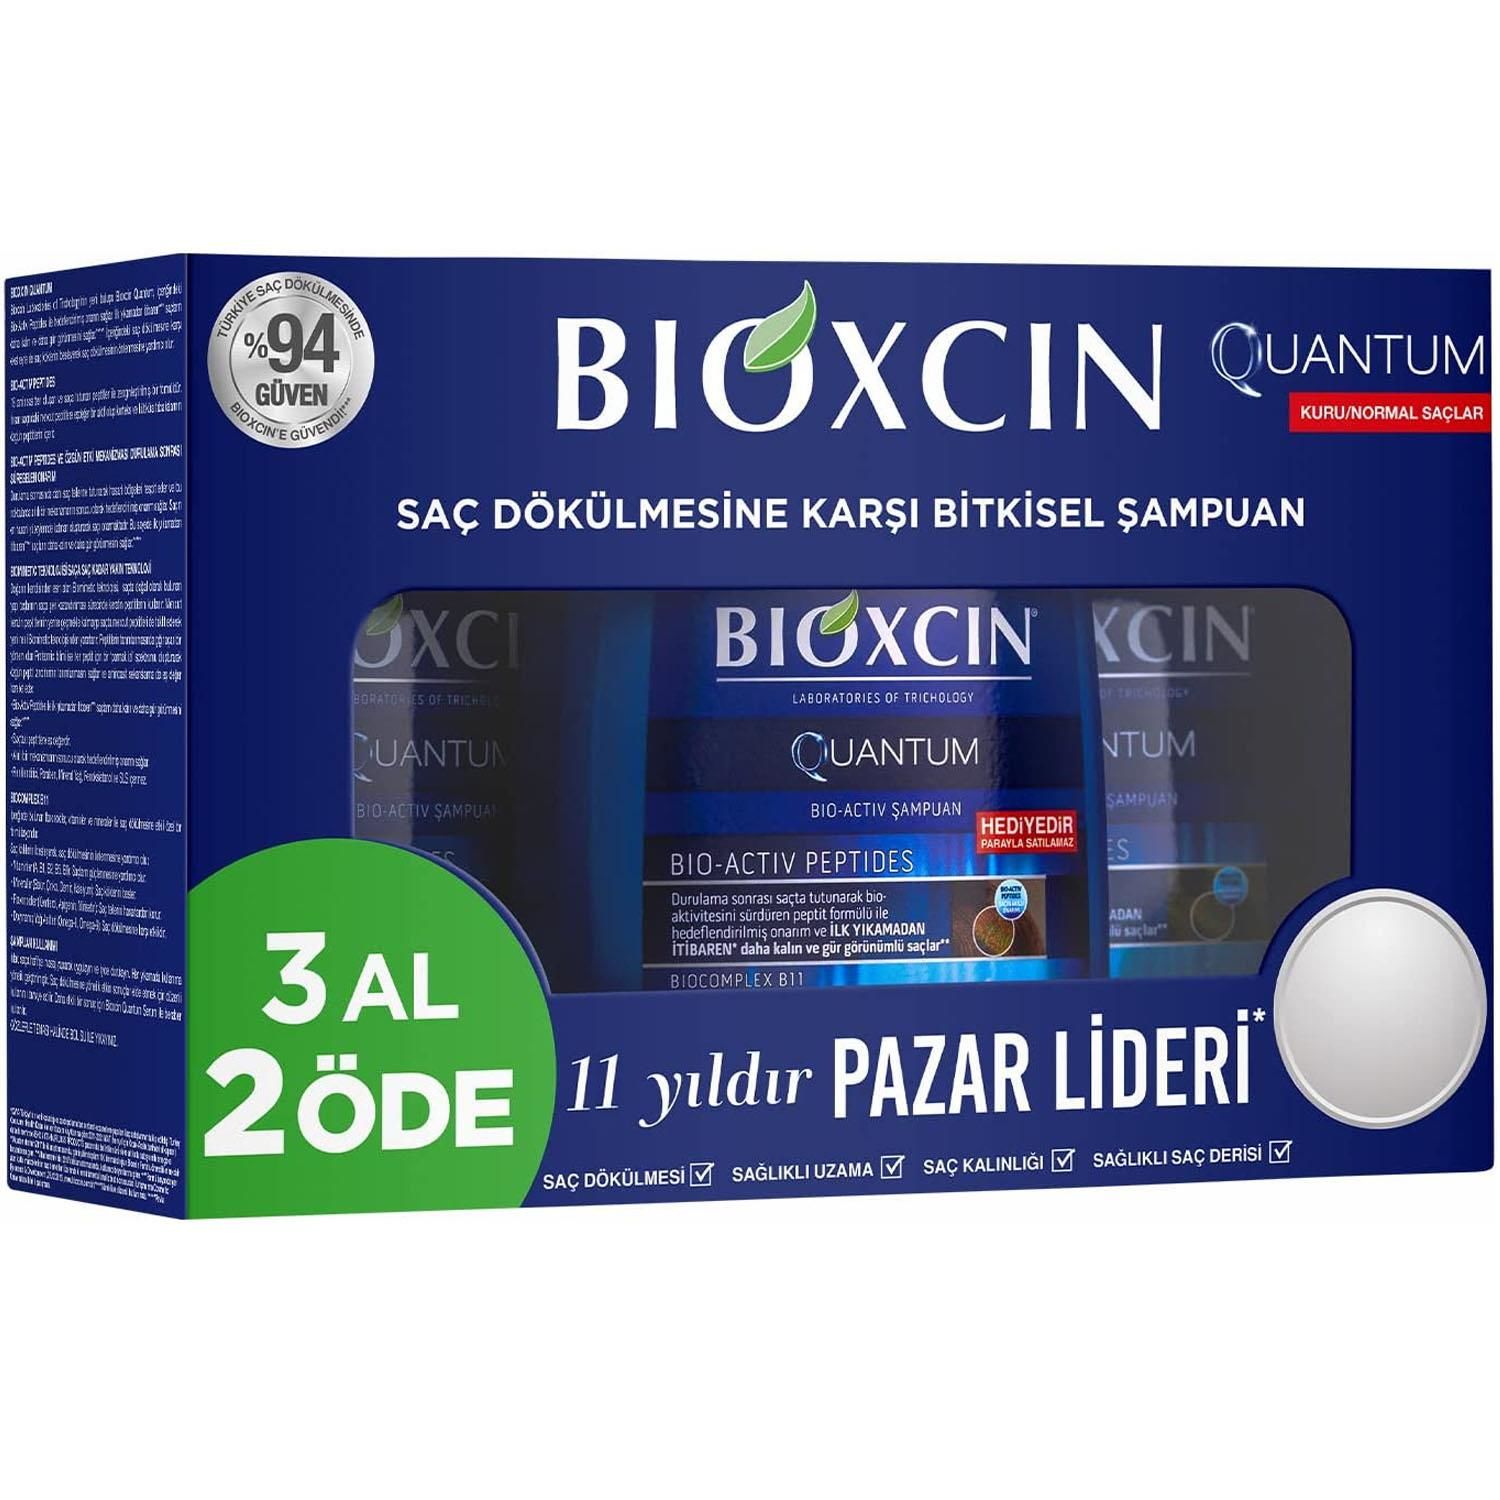 Bioxcin Quantum Kuru Normal Saçlar İçin Şampuan 3 x 300 ml 3 Al 2 Öde